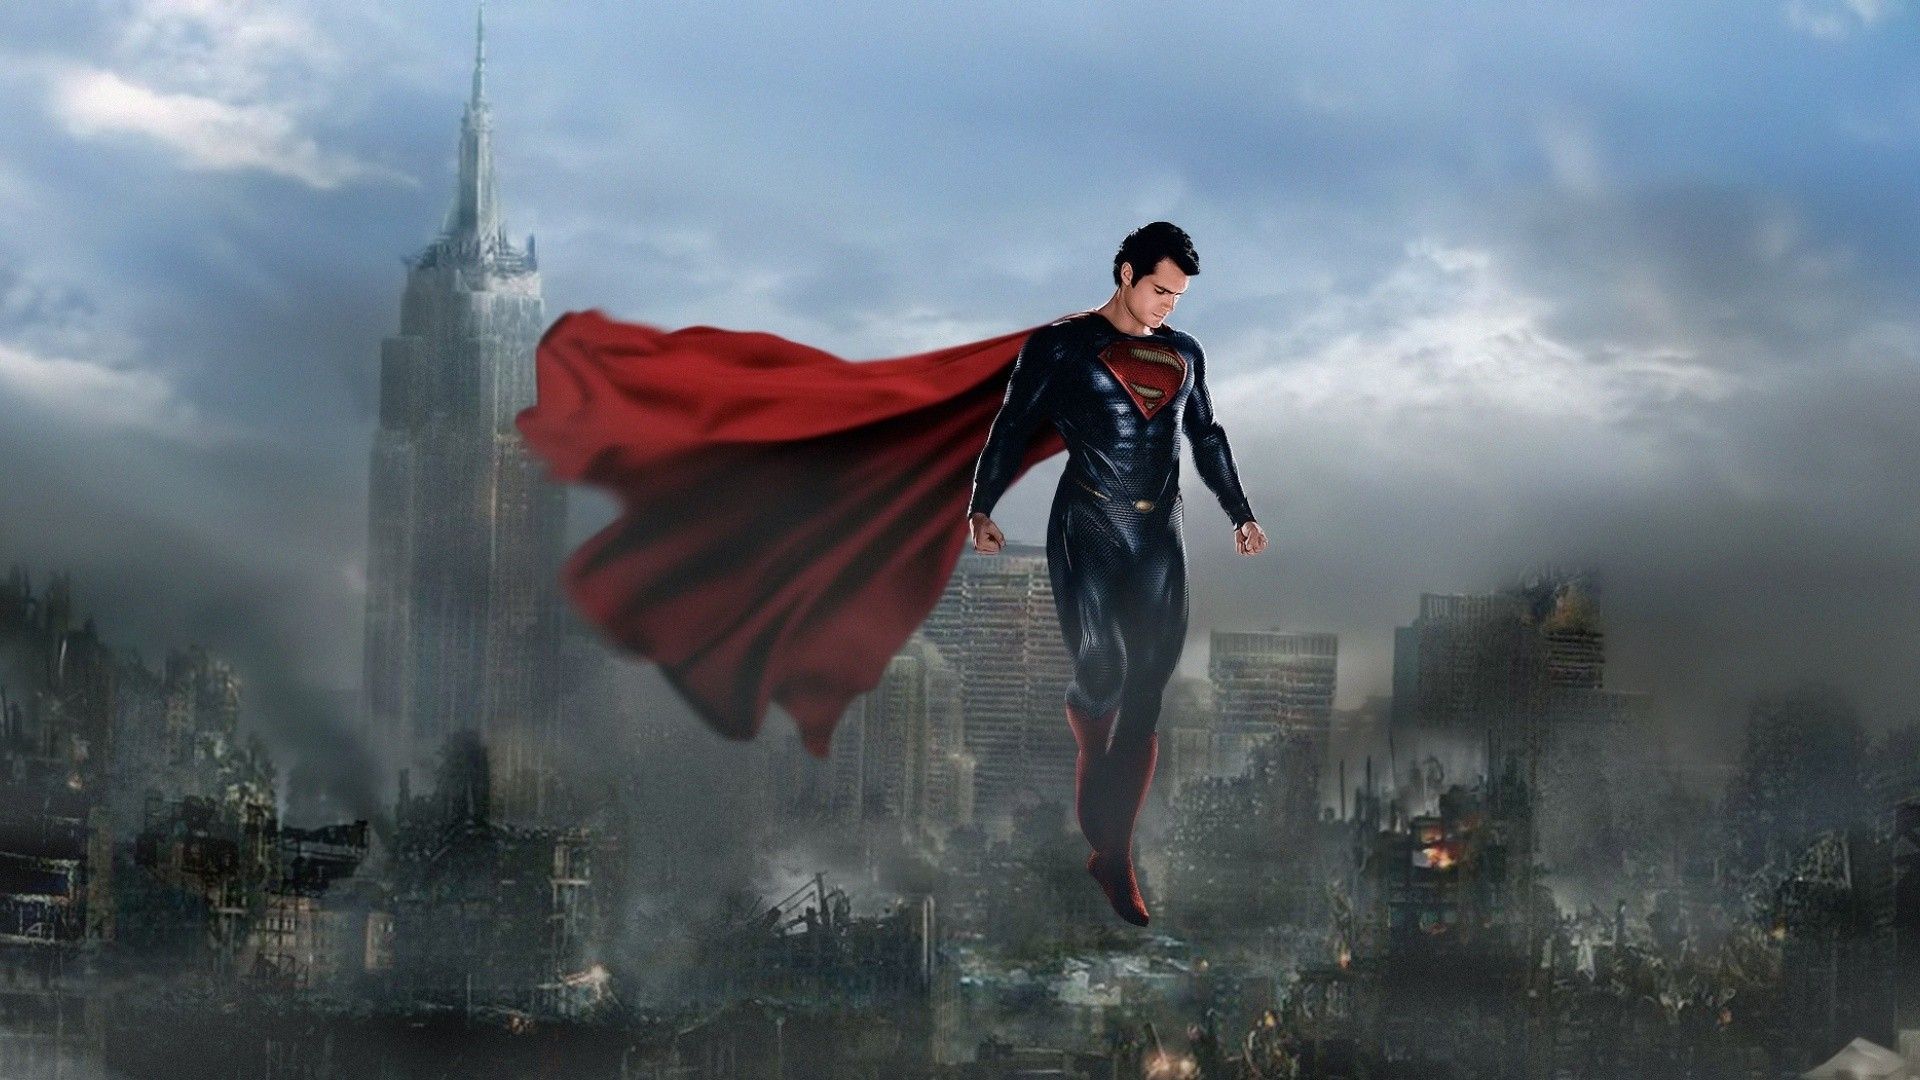 Henry Cavill as Superman Wallpaper 5k HD ID:8297